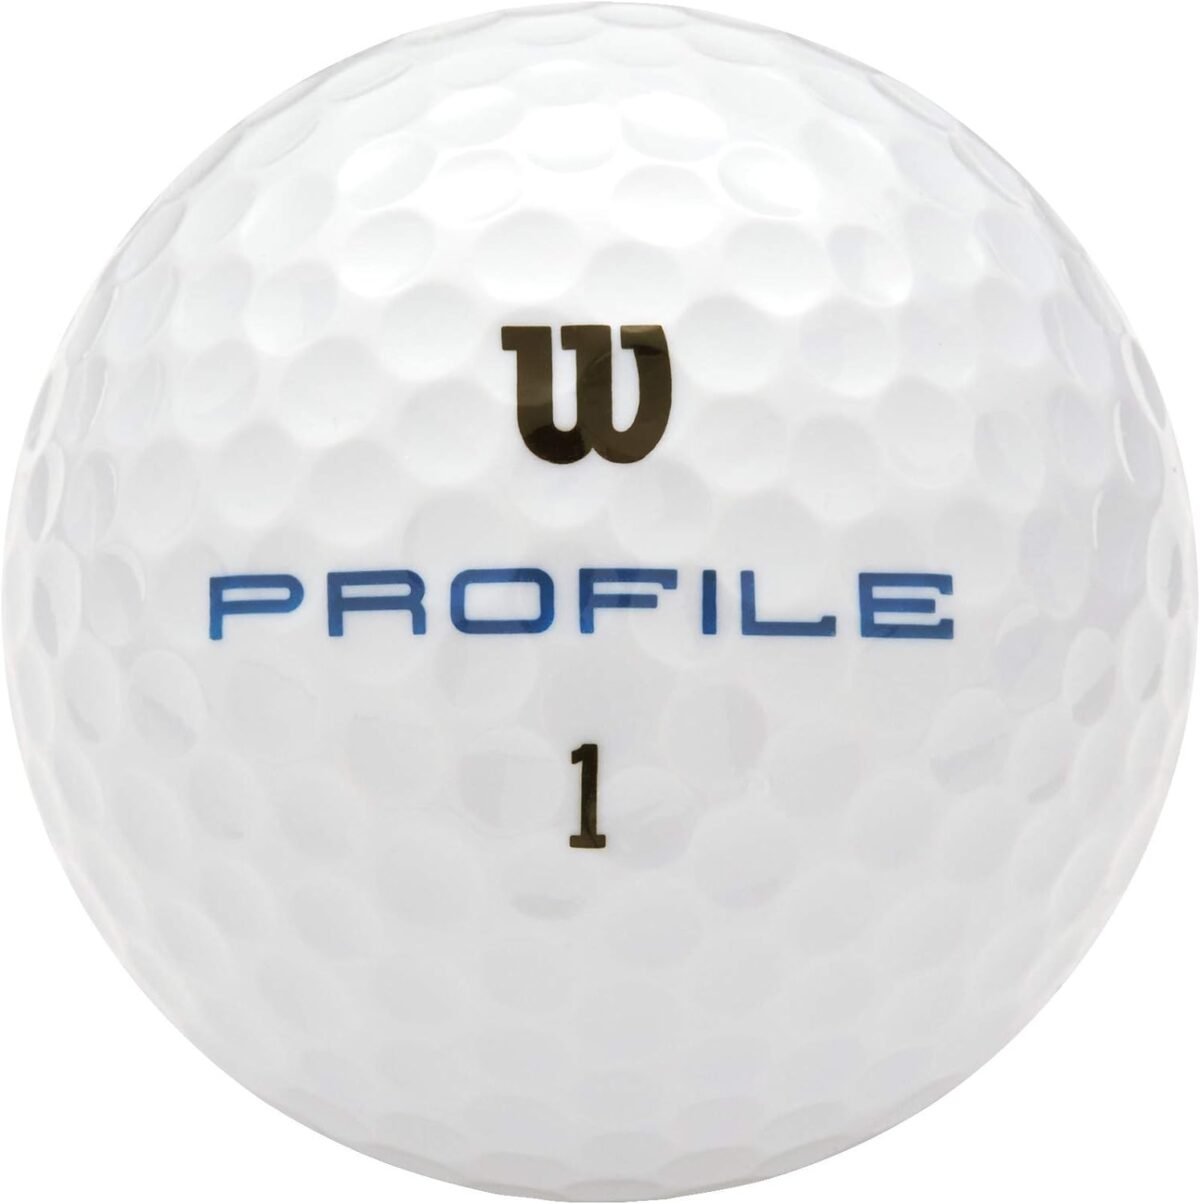 5 Golf Balls: A Review & Comparison